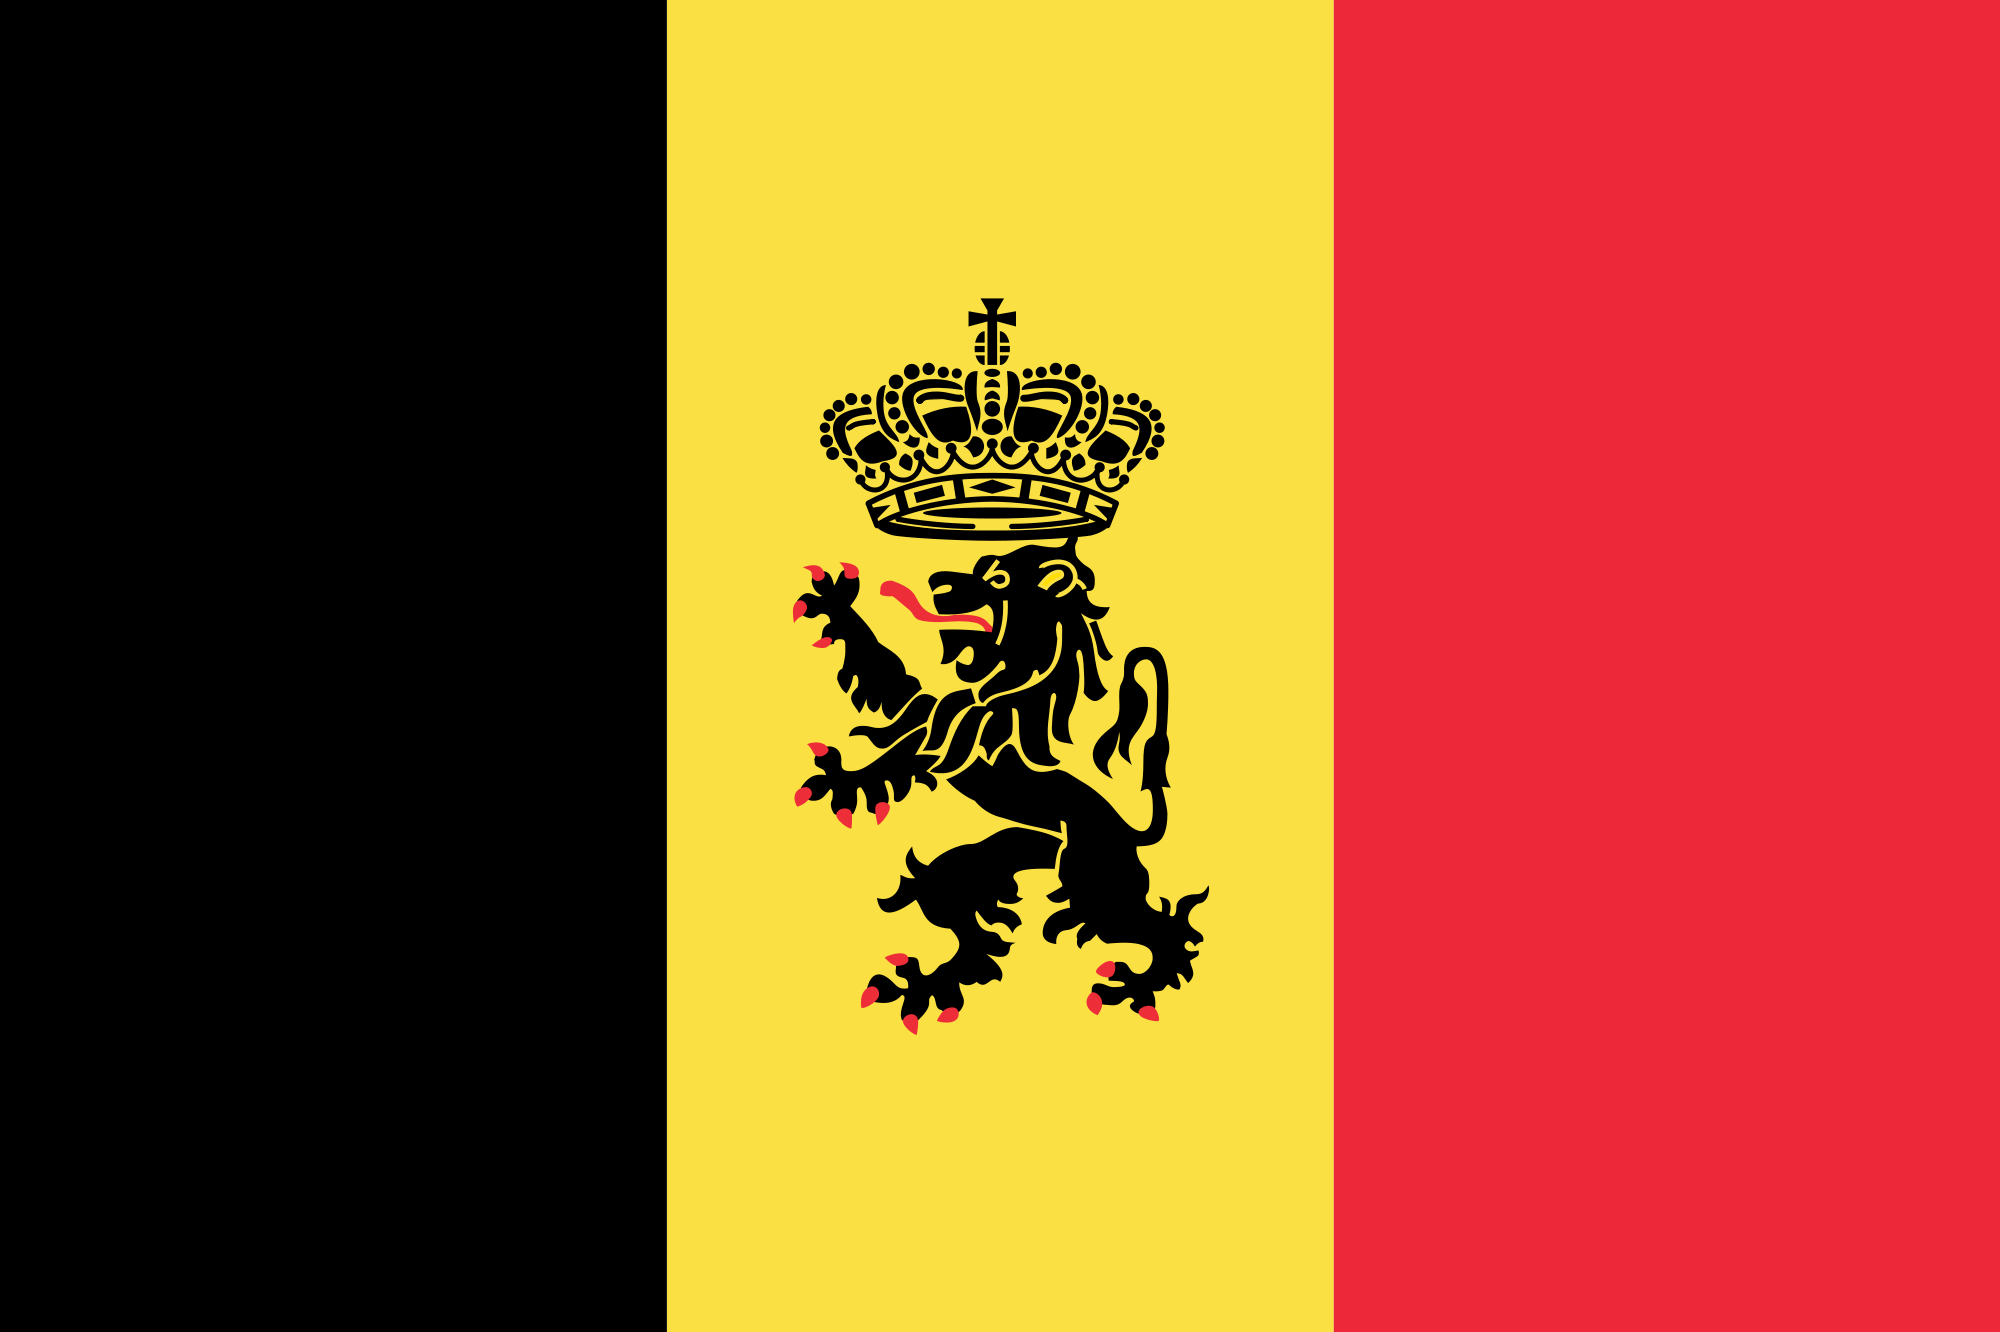 Belgium (State ensign)